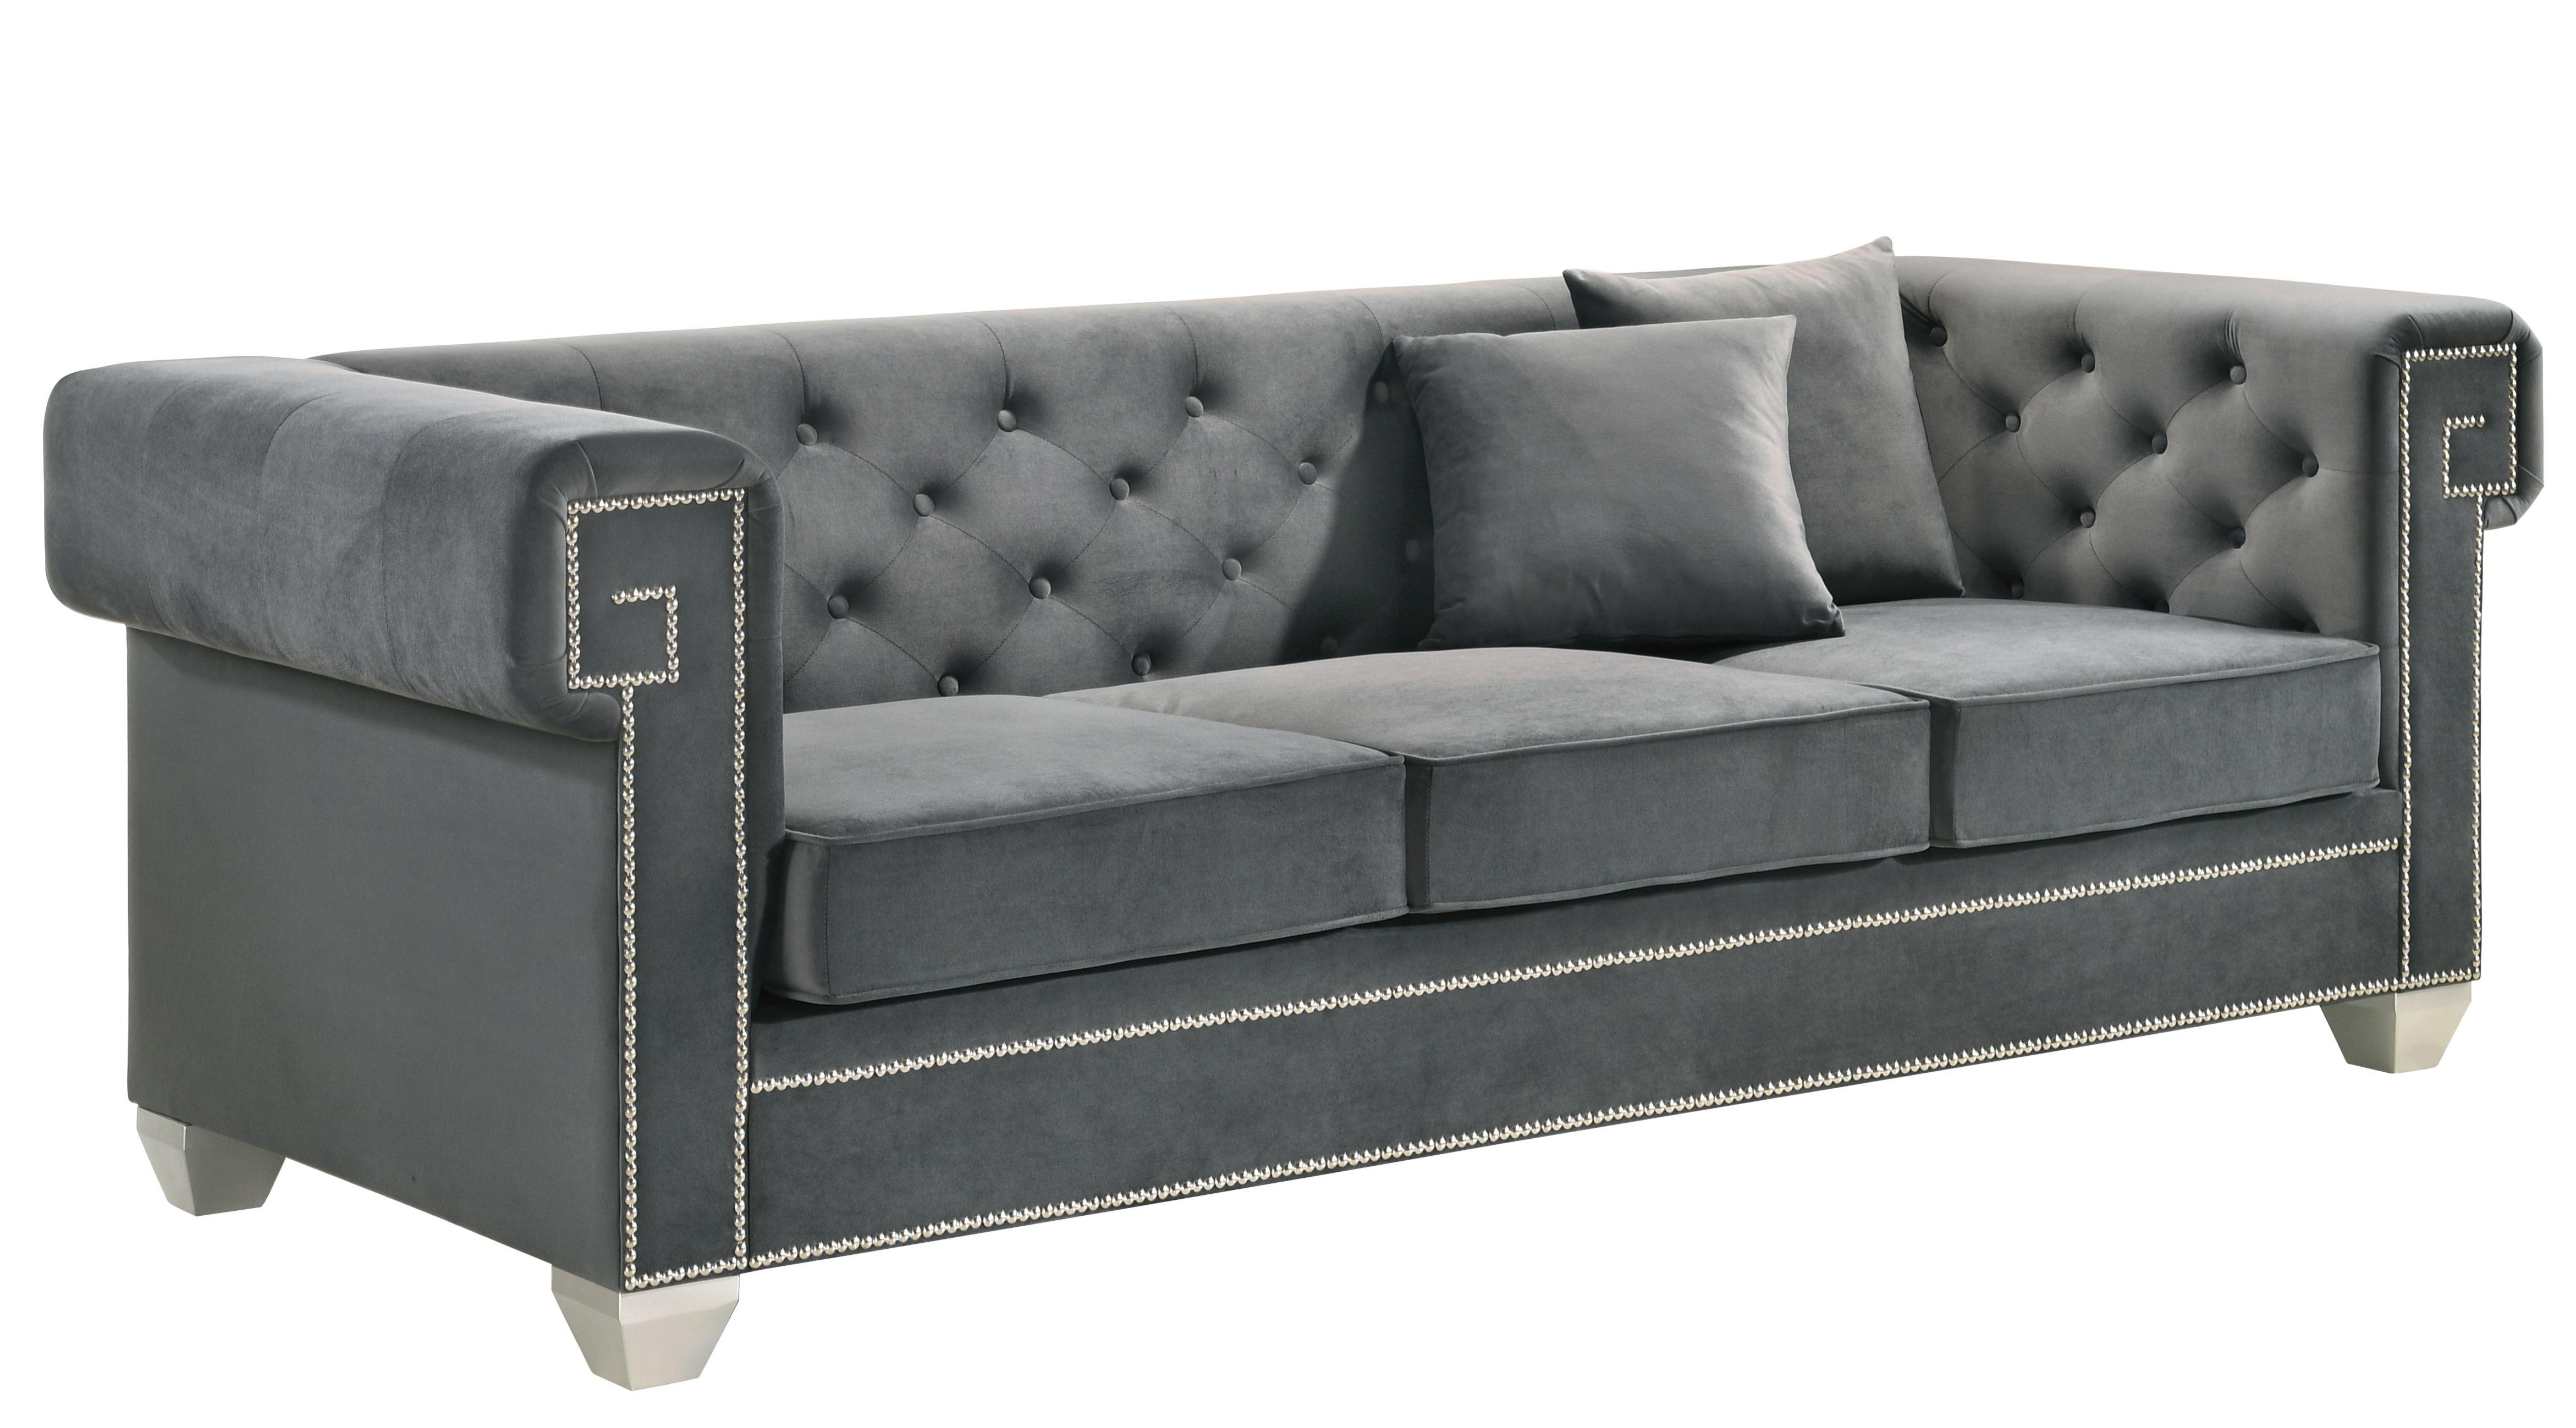 Cosmos Furniture Clover Gray Sofa